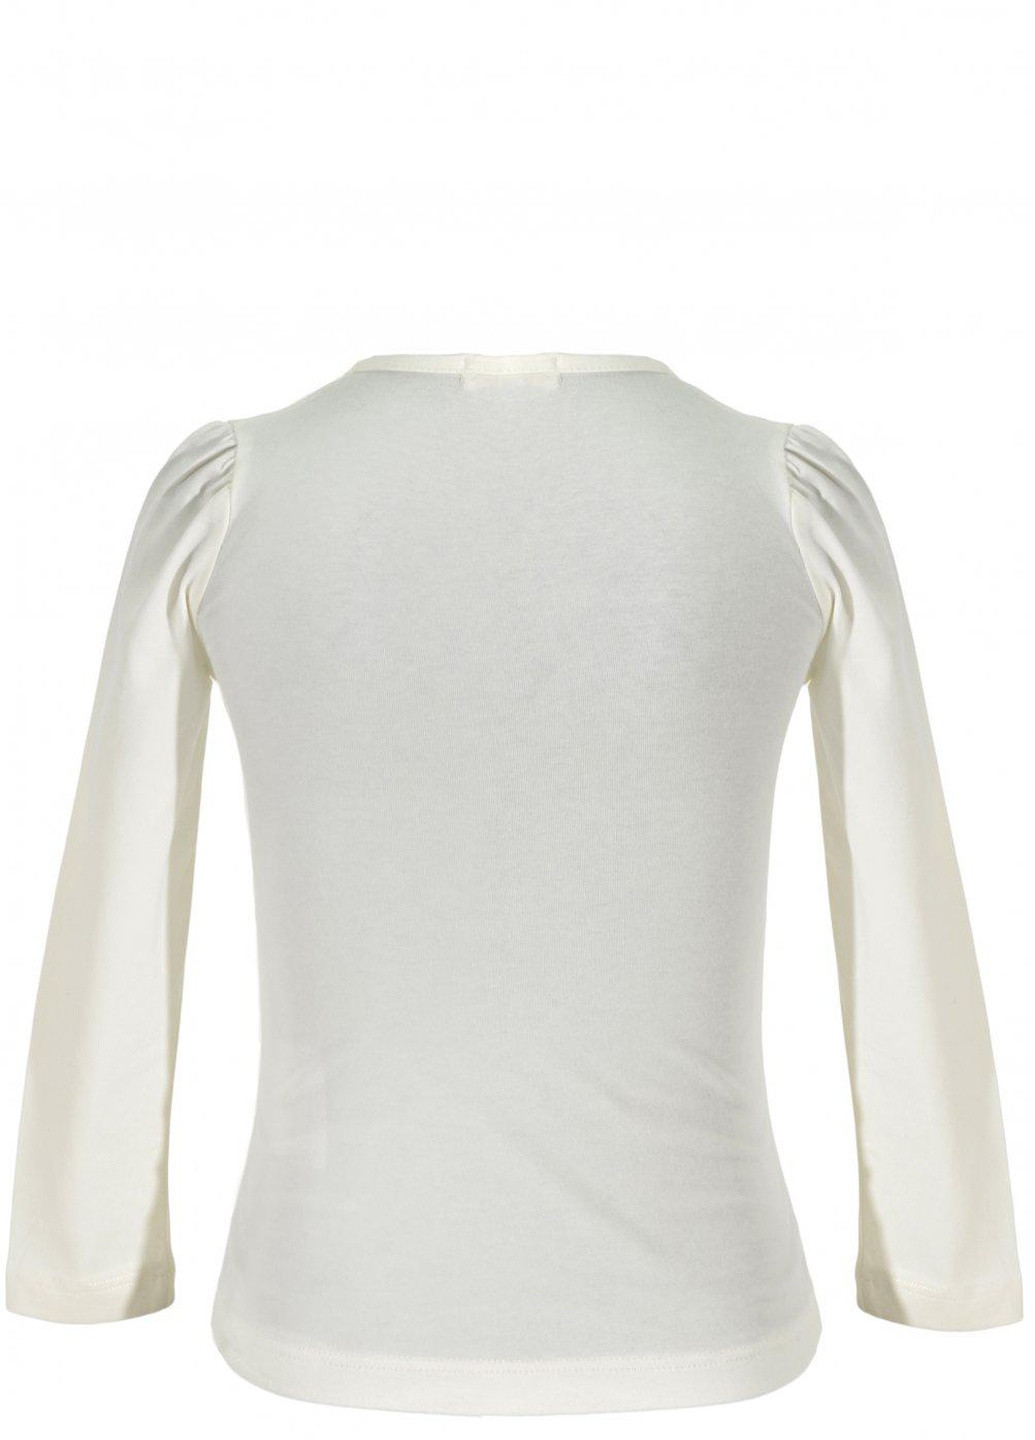 Белая футболки батник дівчинка (w019-6) Lemanta